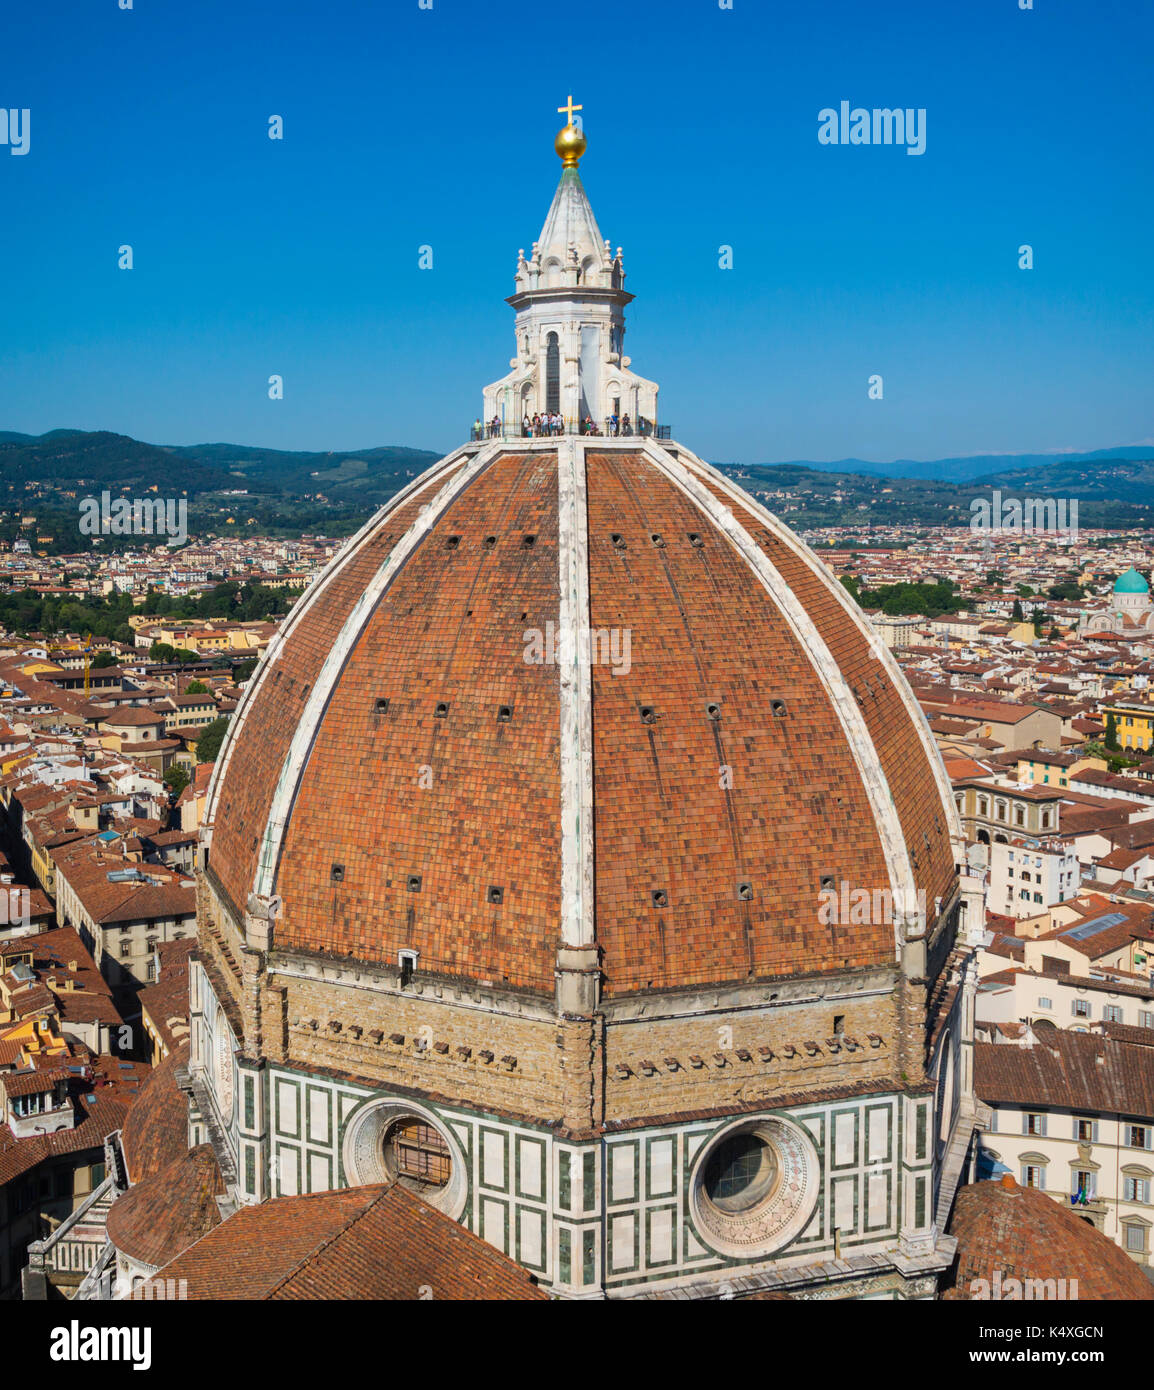 Firenze, provincia di Firenze, Toscana, Italia. la cupola del Duomo o Cattedrale, progettata dal Brunelleschi e si trova nel centro storico di Firenze è un unes Foto Stock